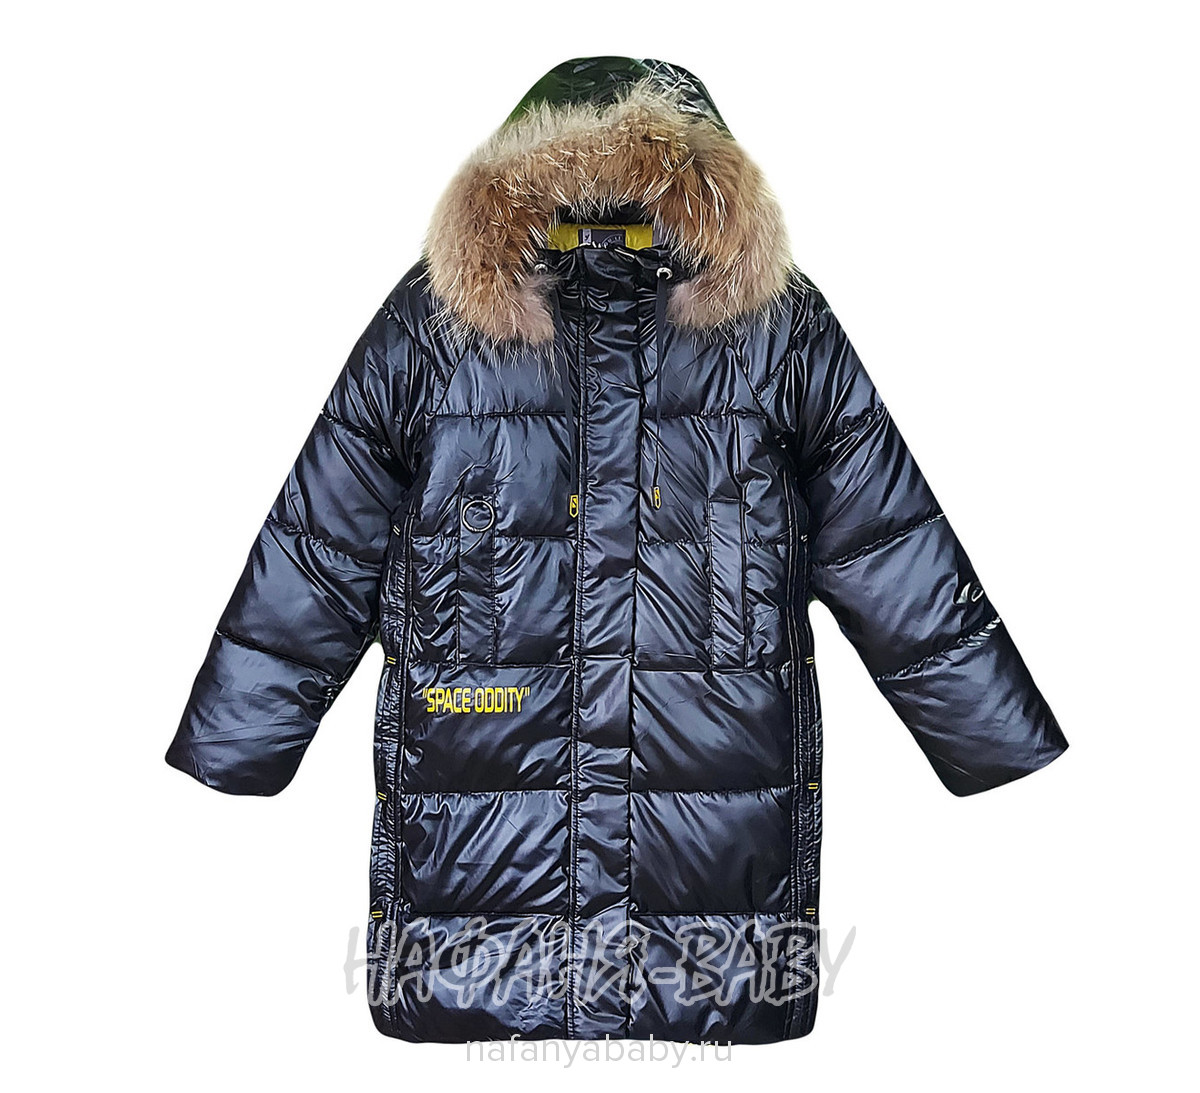 Зимнее подростковое пальто YOI LI арт: 225, 10-15 лет, оптом Китай (Пекин)